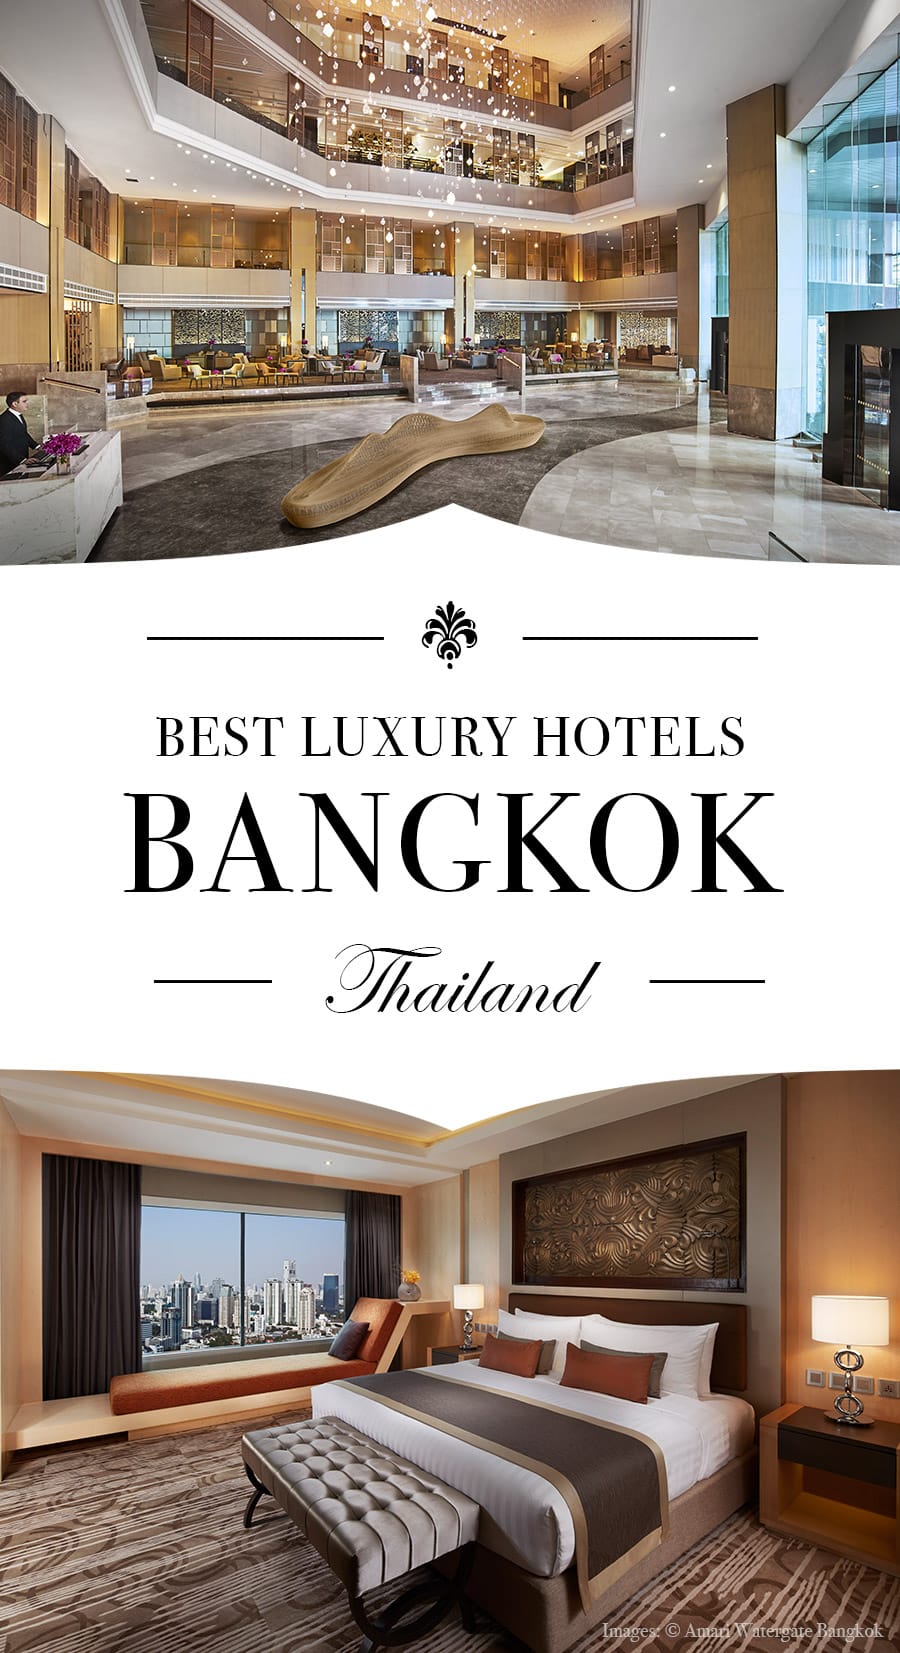 Τα καλύτερα πολυτελή ξενοδοχεία στην Μπανγκόκ Ταϊλάνδη. Εικόνες: © Amari Watergate Bangkok